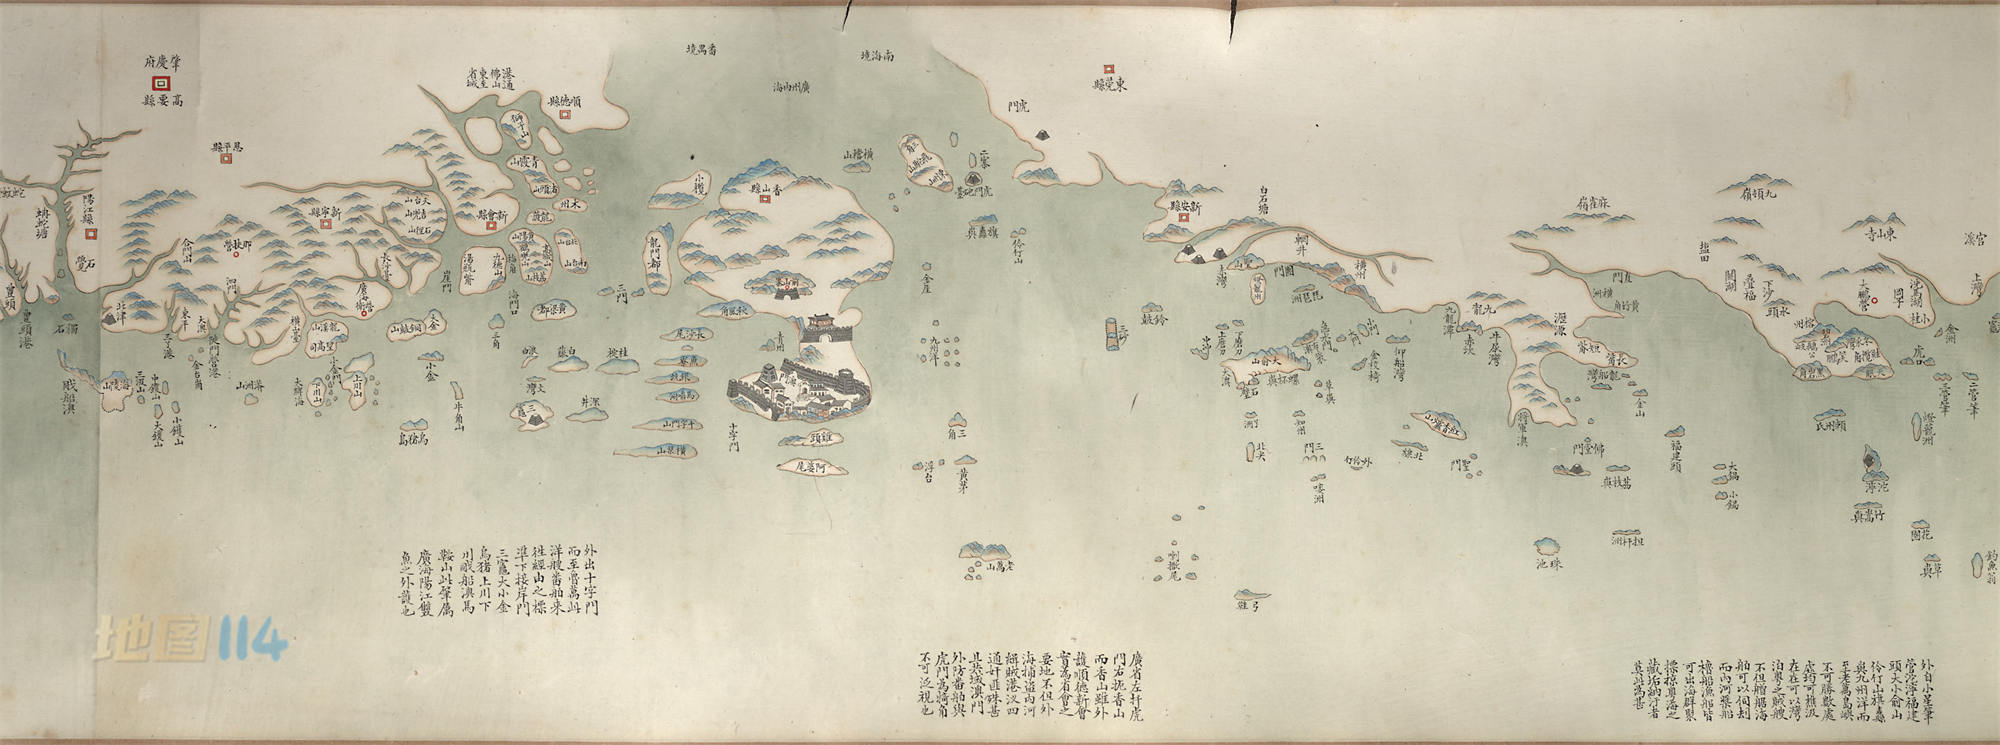 1881年七省沿海图.jpg